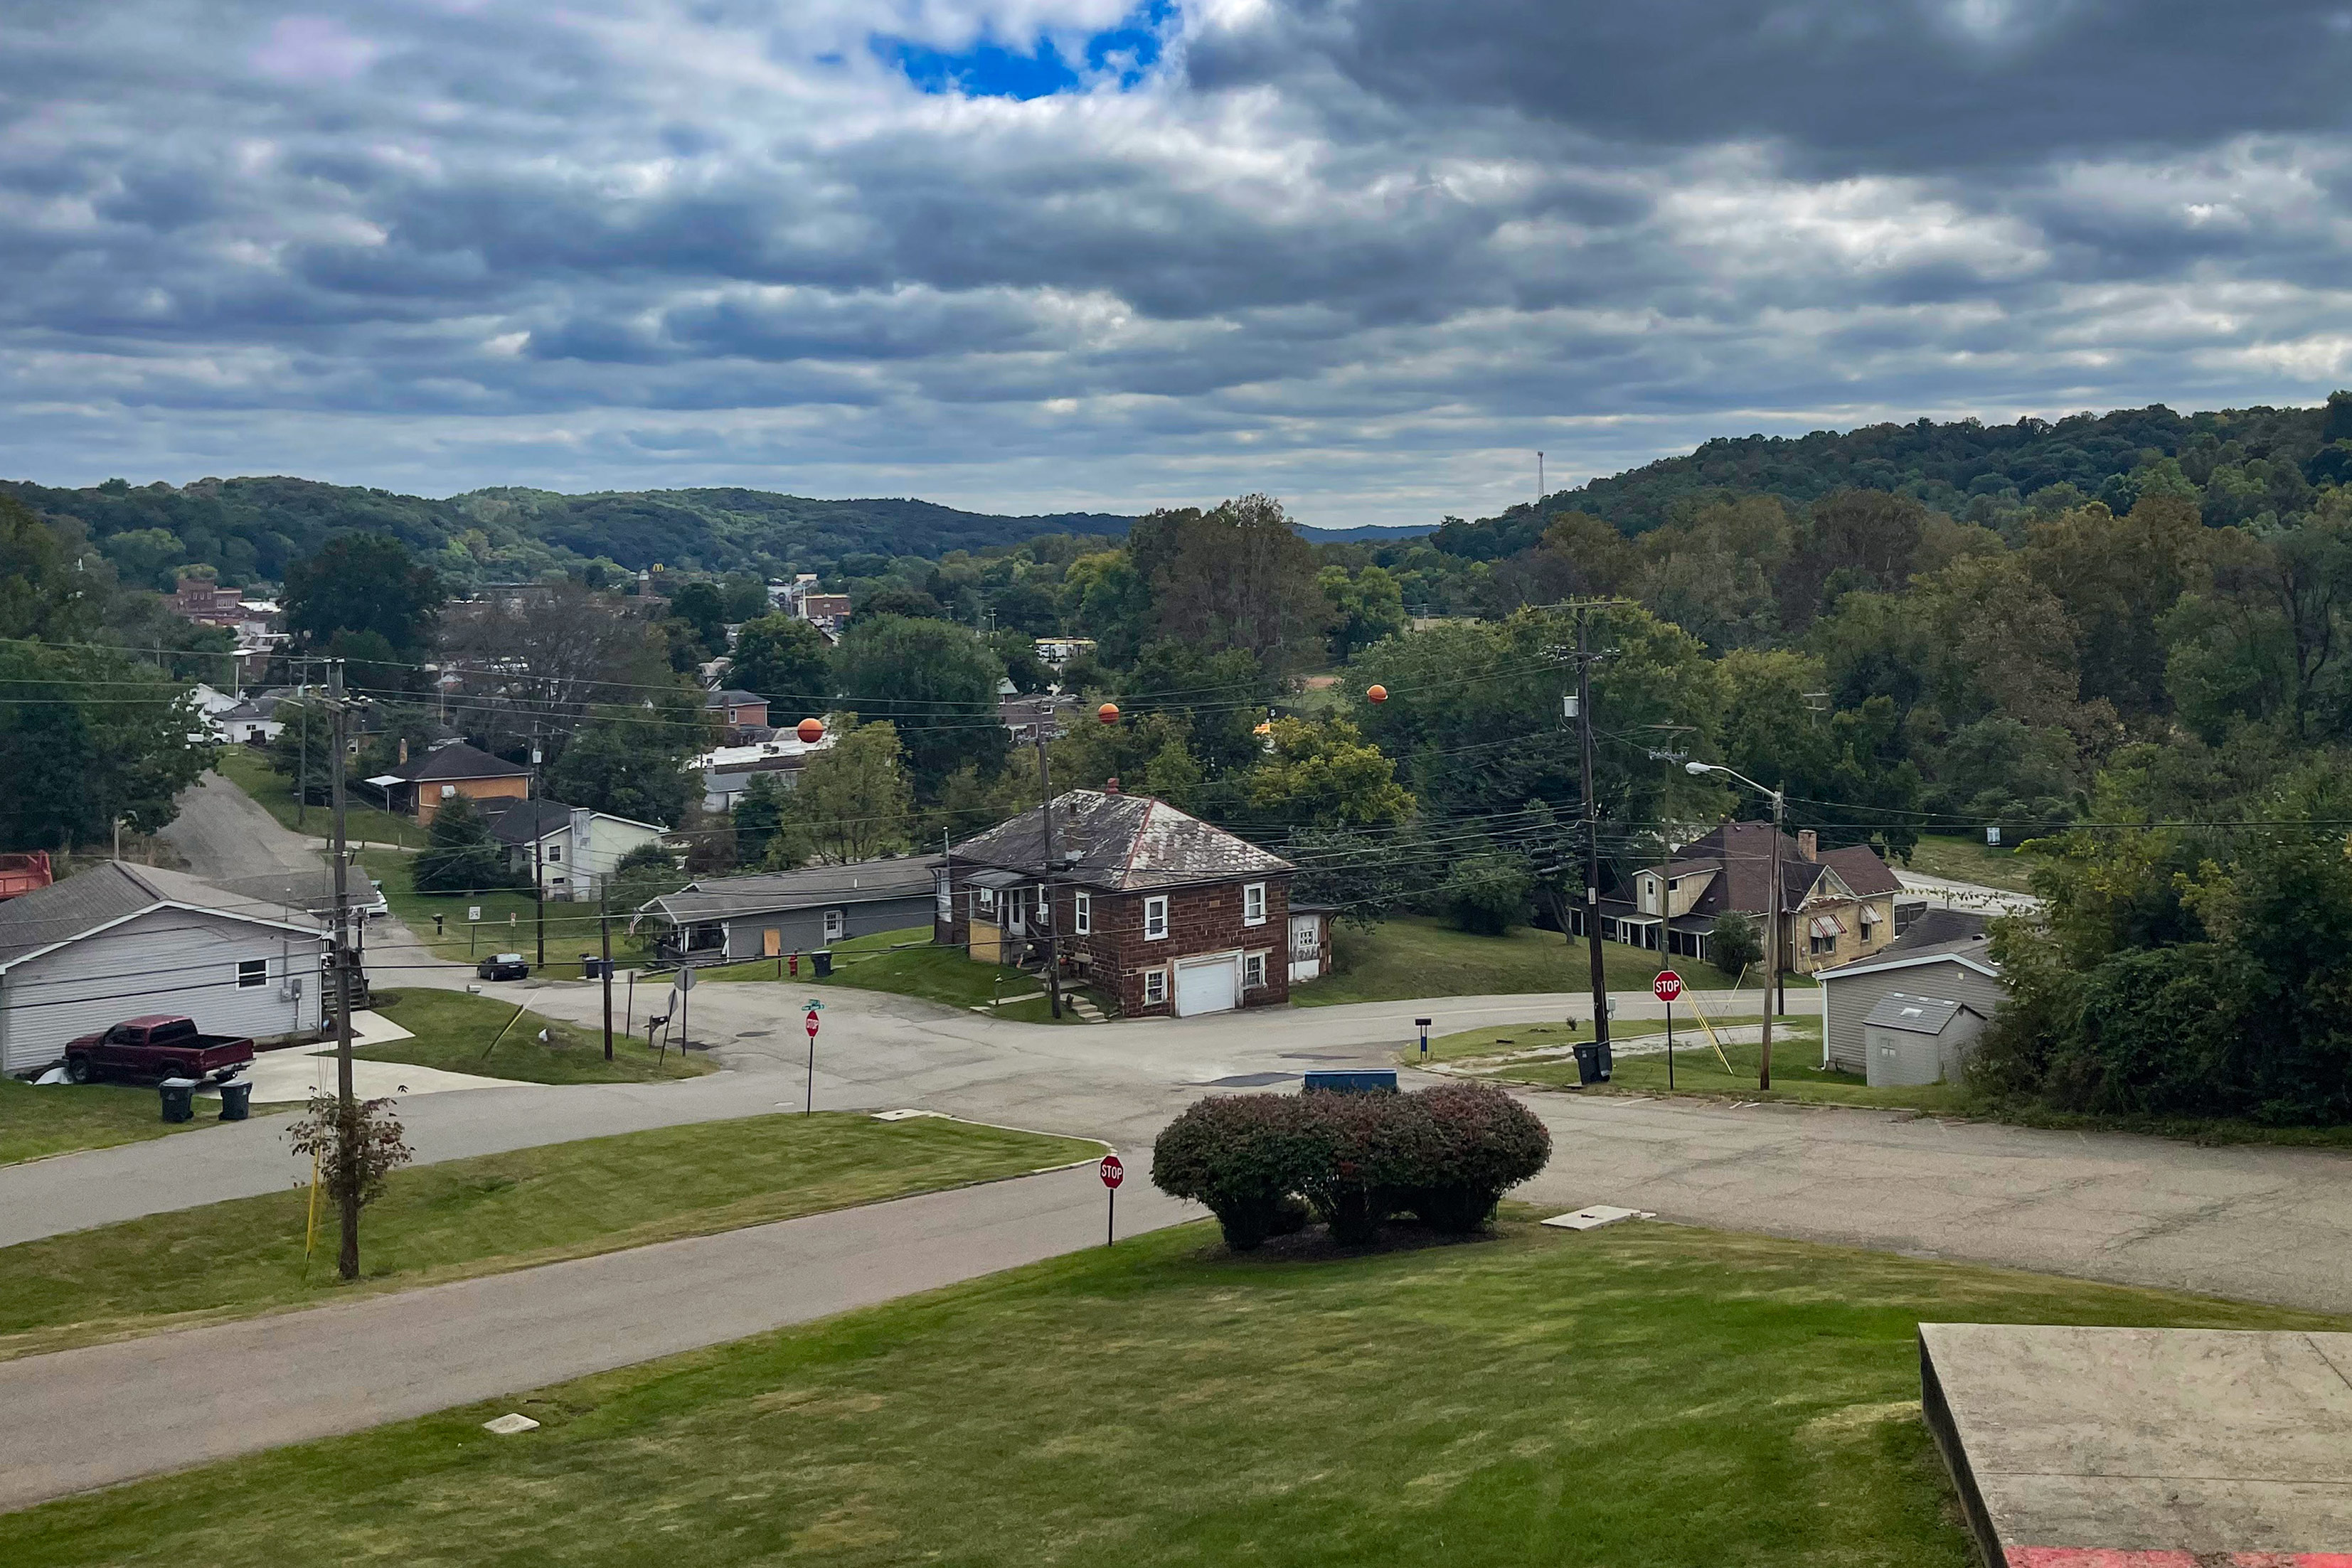 Bir fotoğraf, Ohio'daki Nelsonville şehir merkezine bakan bir manzarayı gösteriyor.  Geniş yolları olan çimenli, tepelik bir alandır.